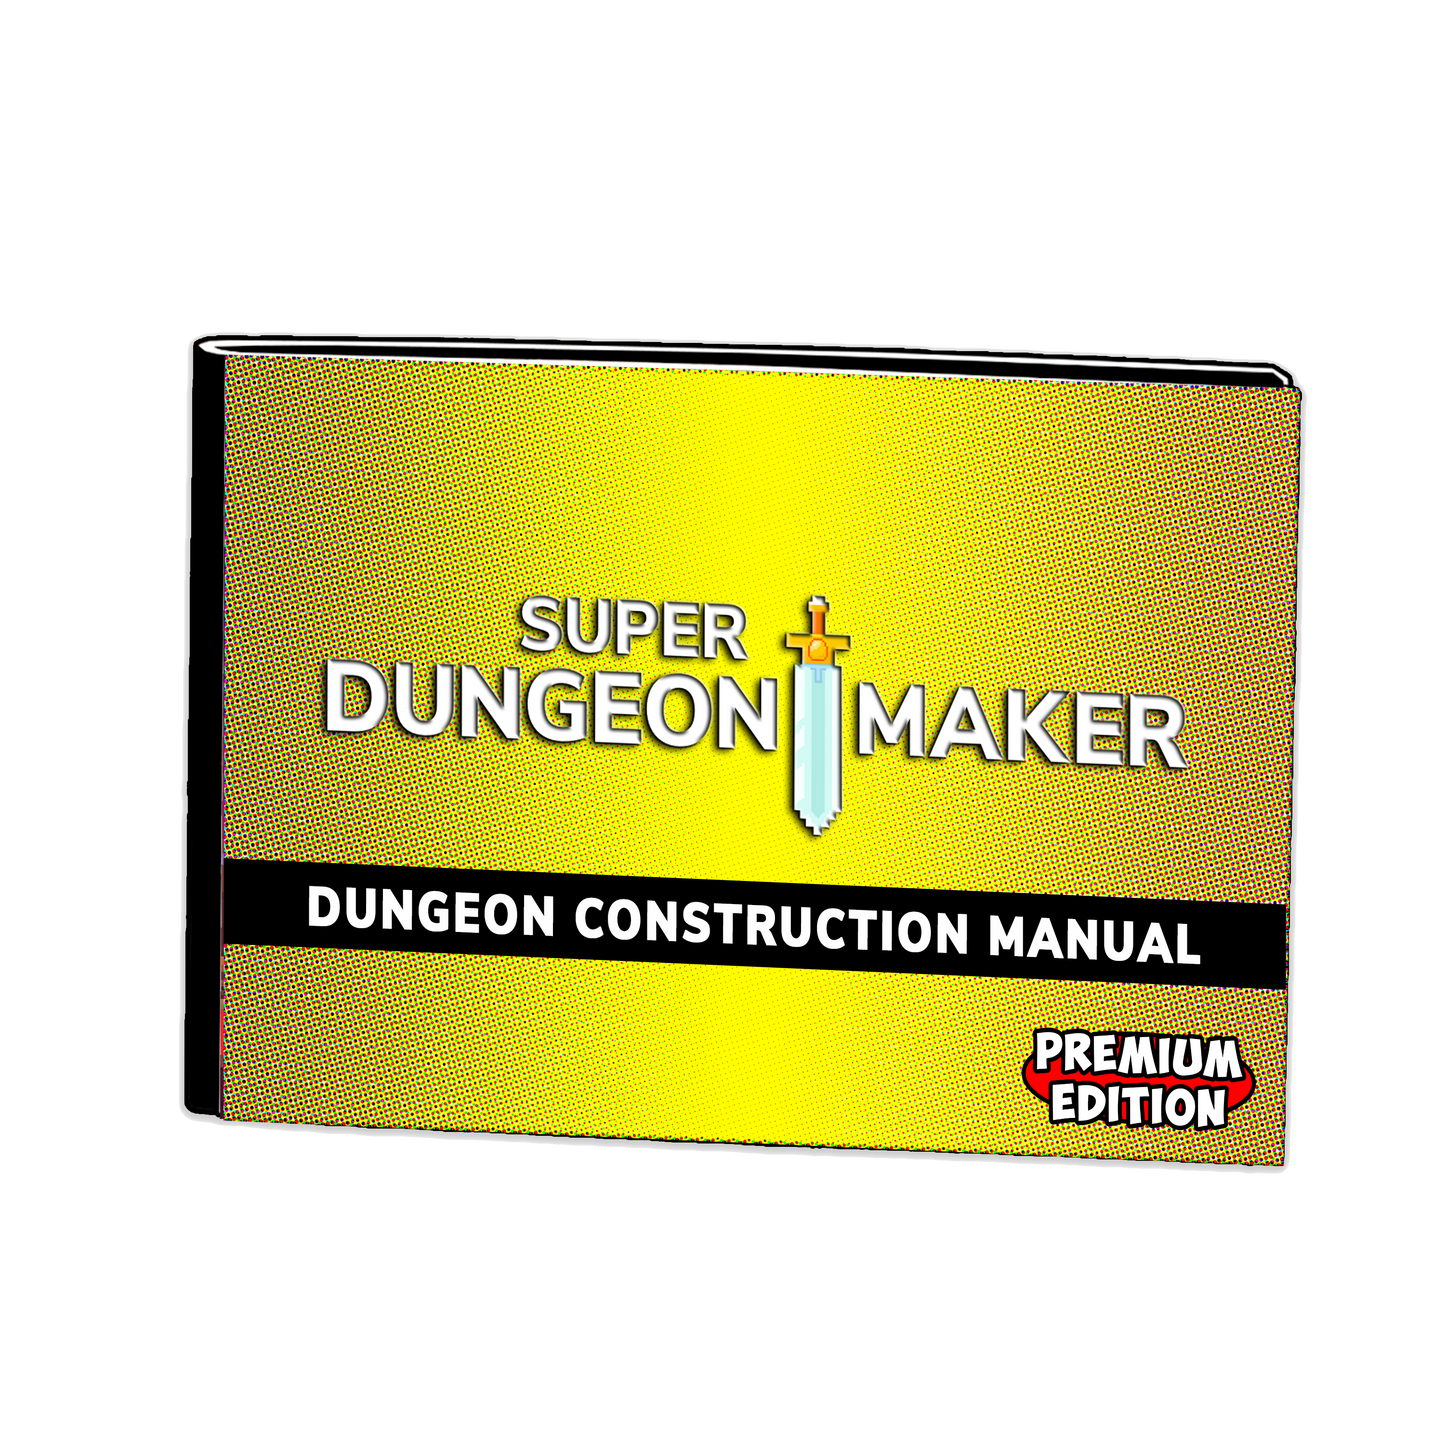 Super Dungeon Maker - Standard Release (First Print)